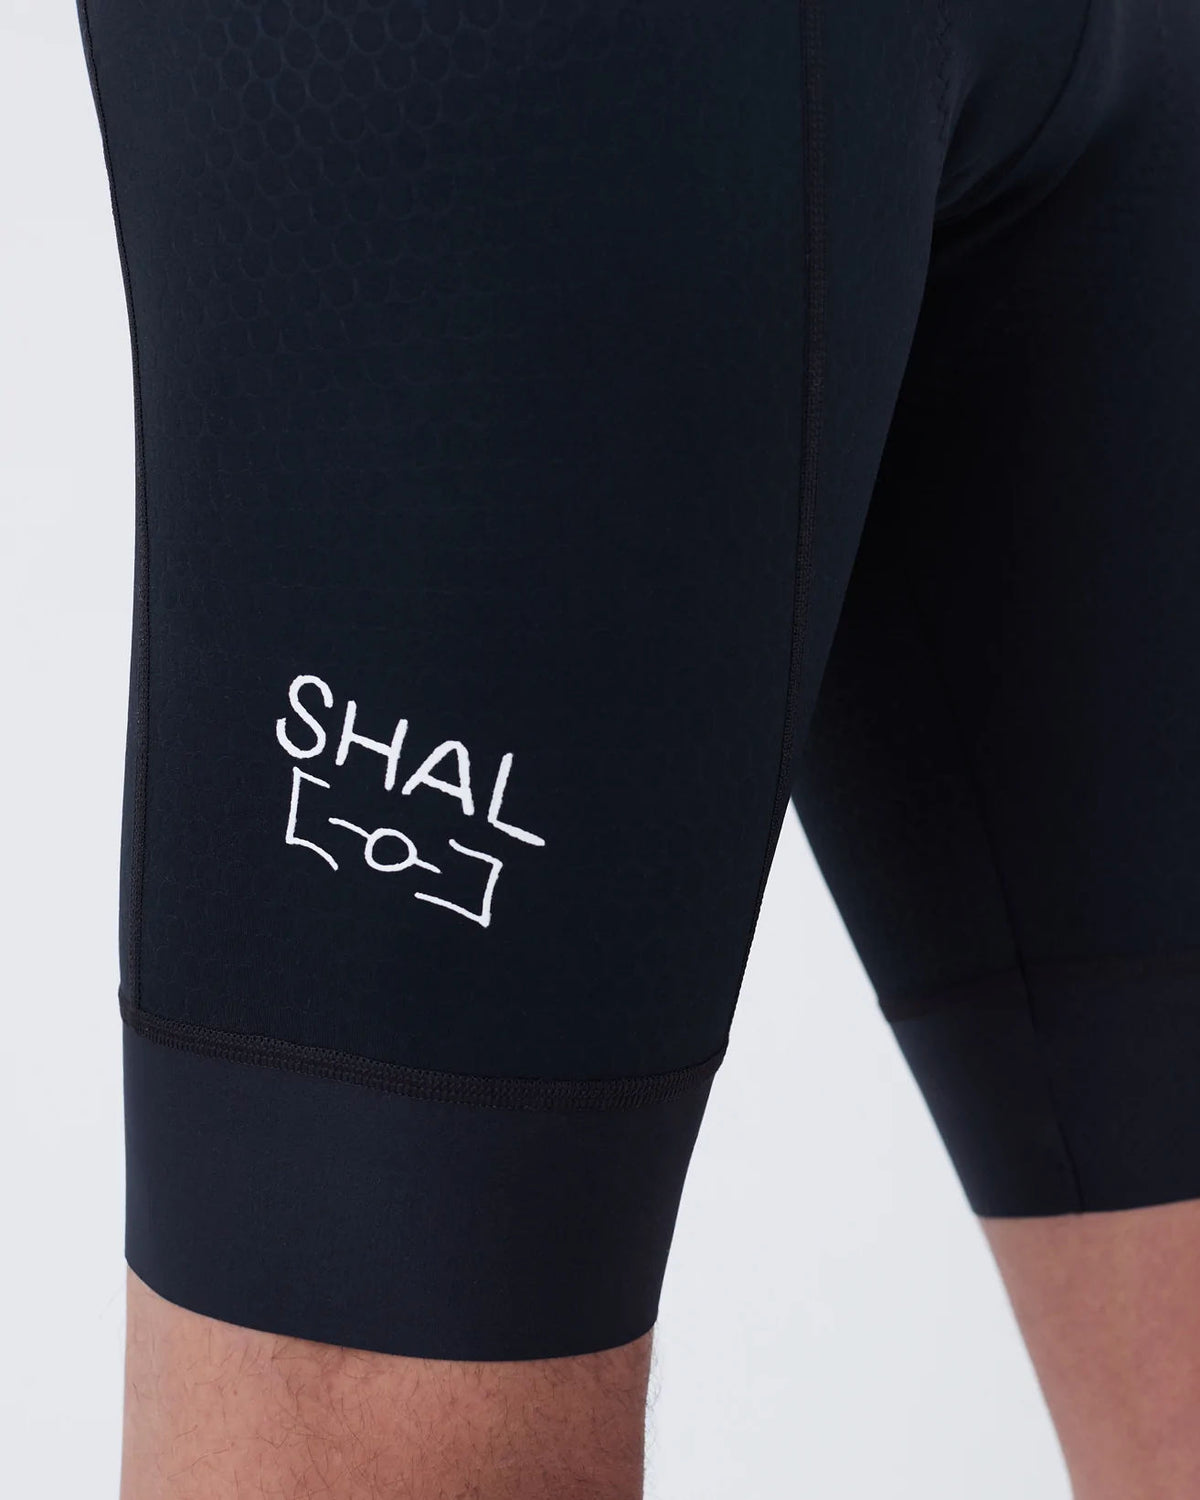 SHAL x PK / Base Bib Shorts